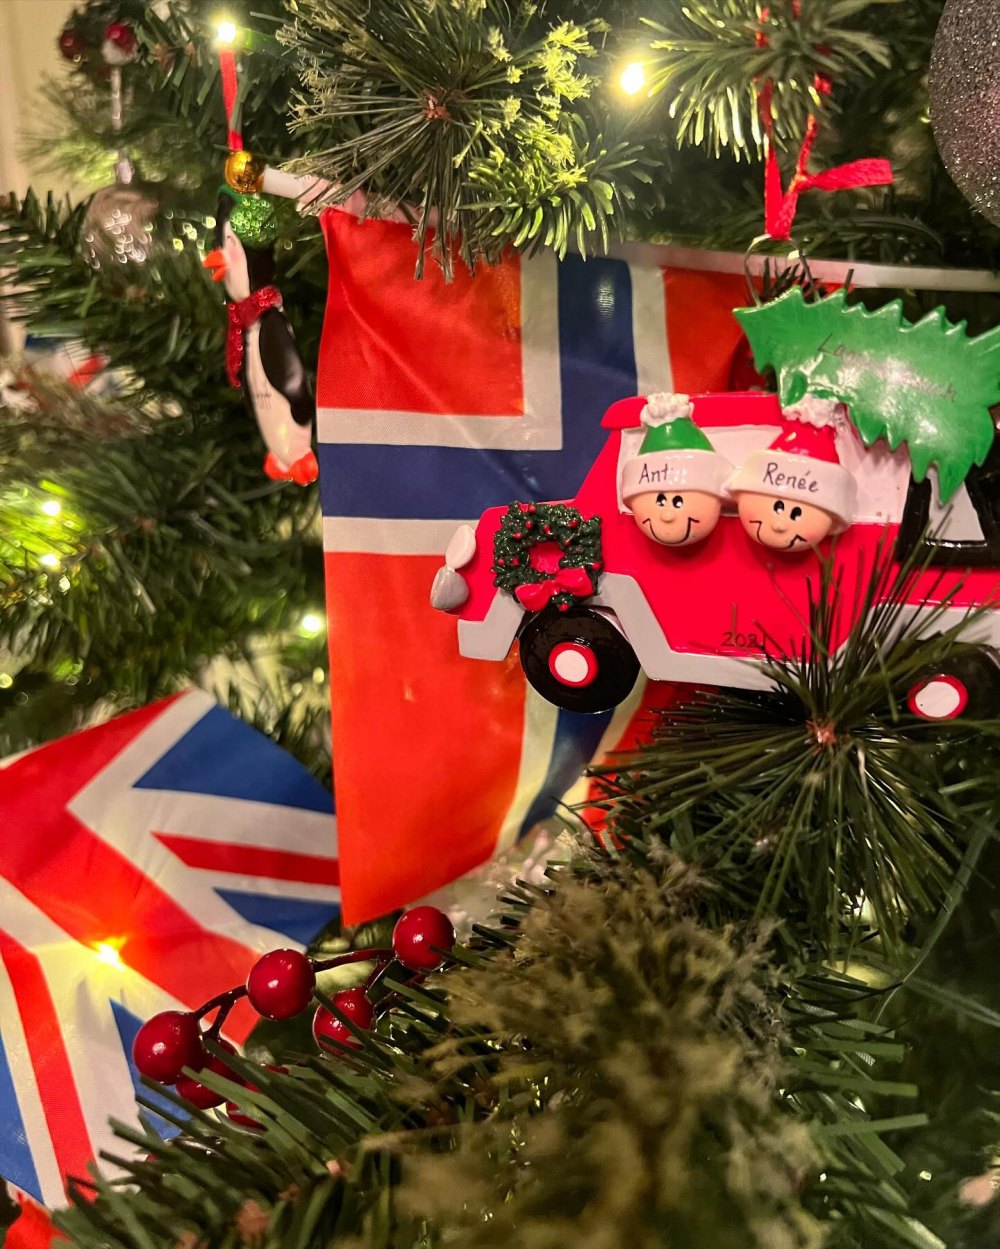 Der Weihnachtsbaumschmuck von Ant Anstead enthält ein Ornament von ihm und seiner Freundin Renee Zellweger